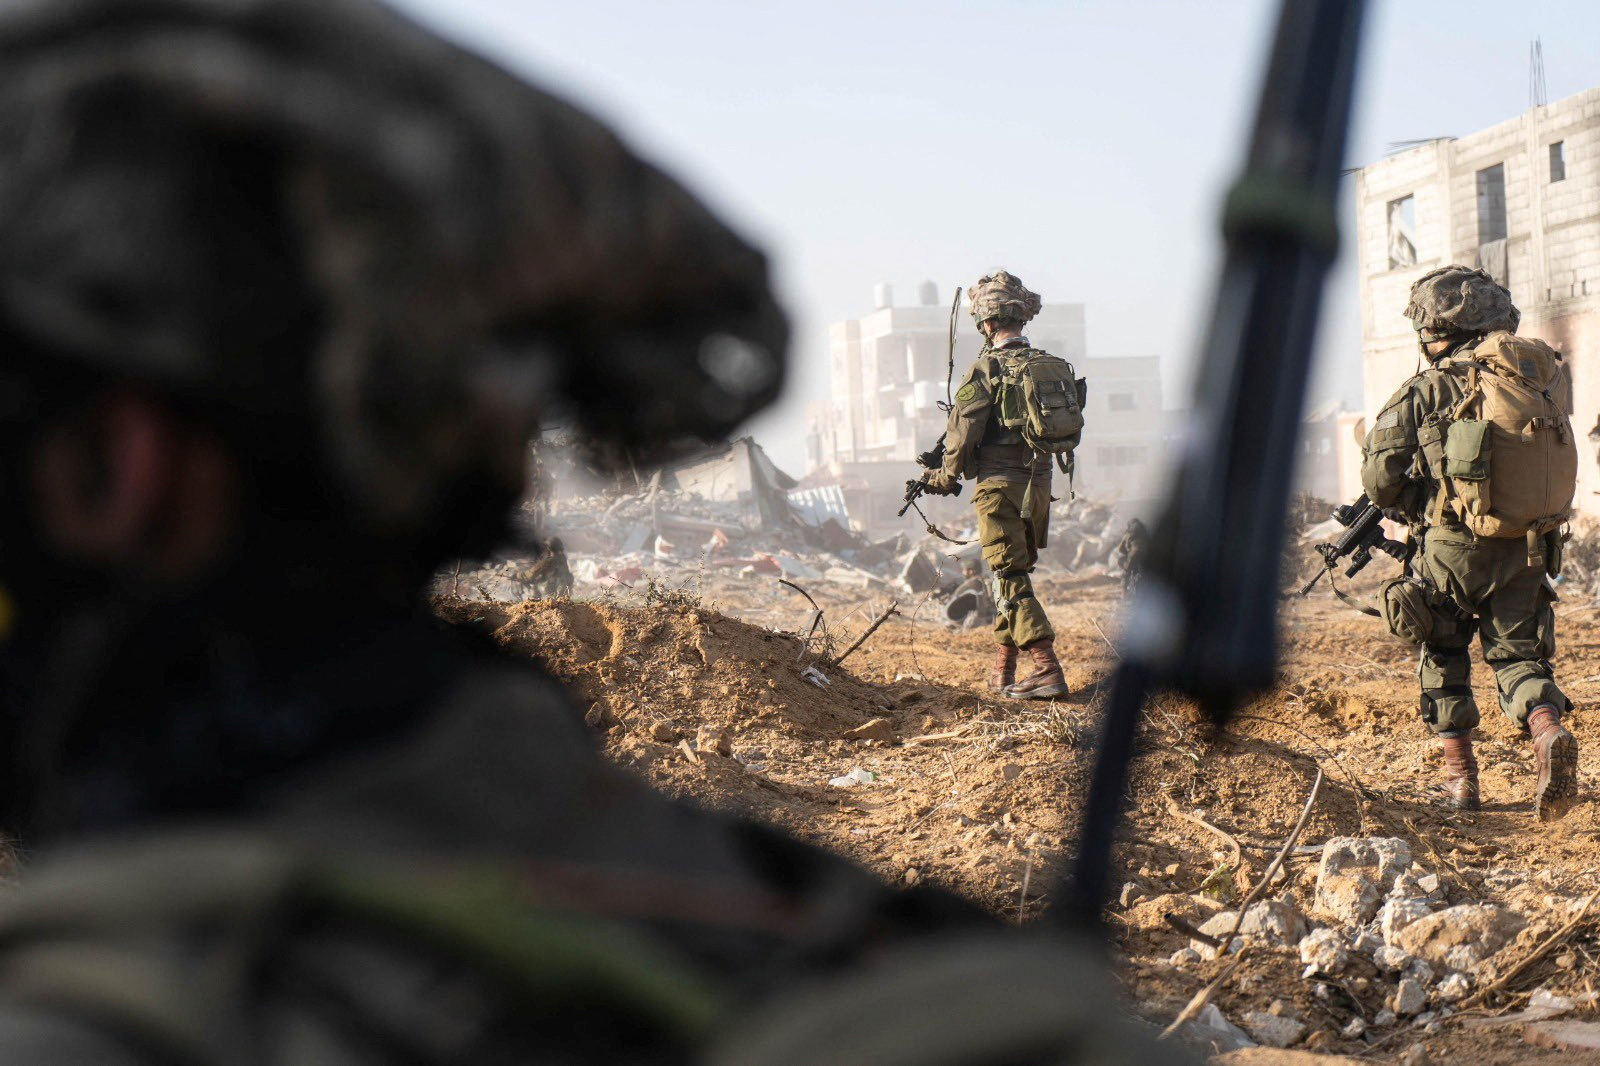 ハマス戦闘員の半分が死傷、戦闘は何カ月も続く＝イスラエル国防相 - ロイター (Reuters Japan)